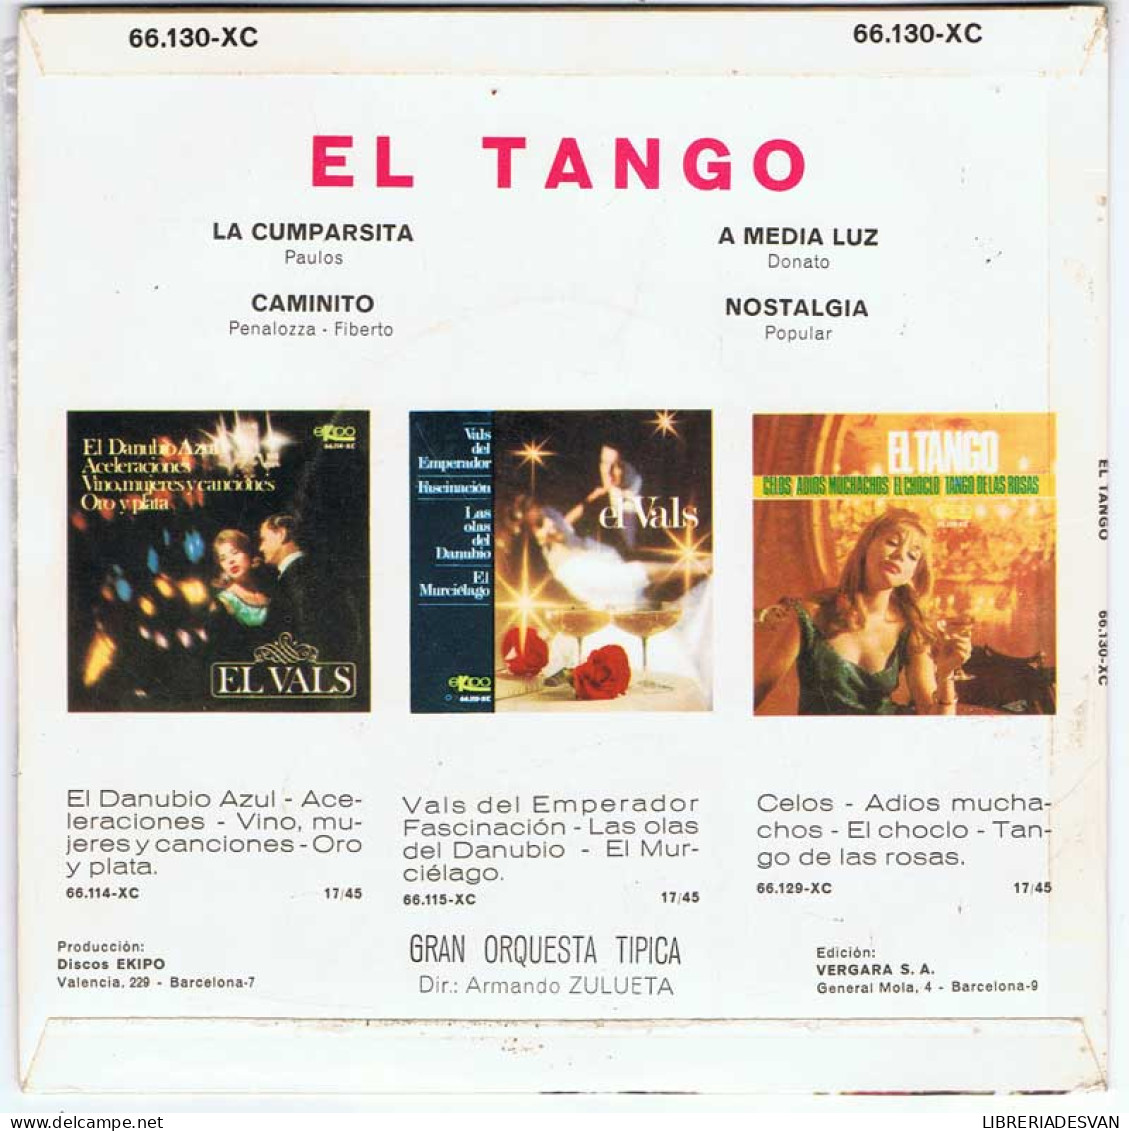 El Tango - La Cumparsita / Caminito / A Media Luz / Nostalgias - EP - Unclassified